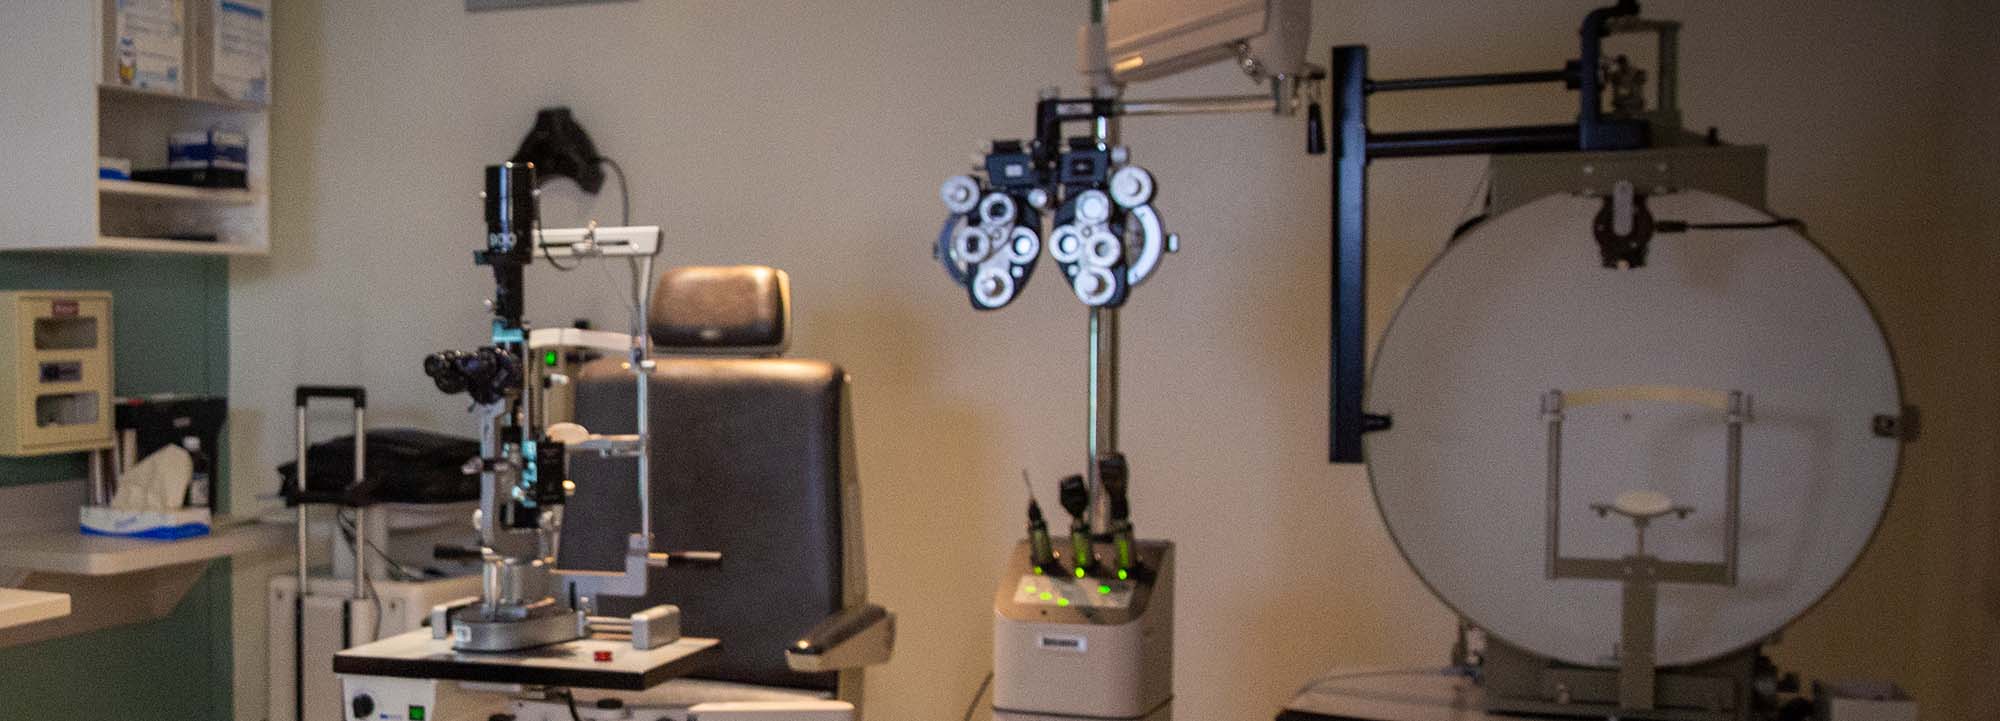 眼科诊所的眼科装备